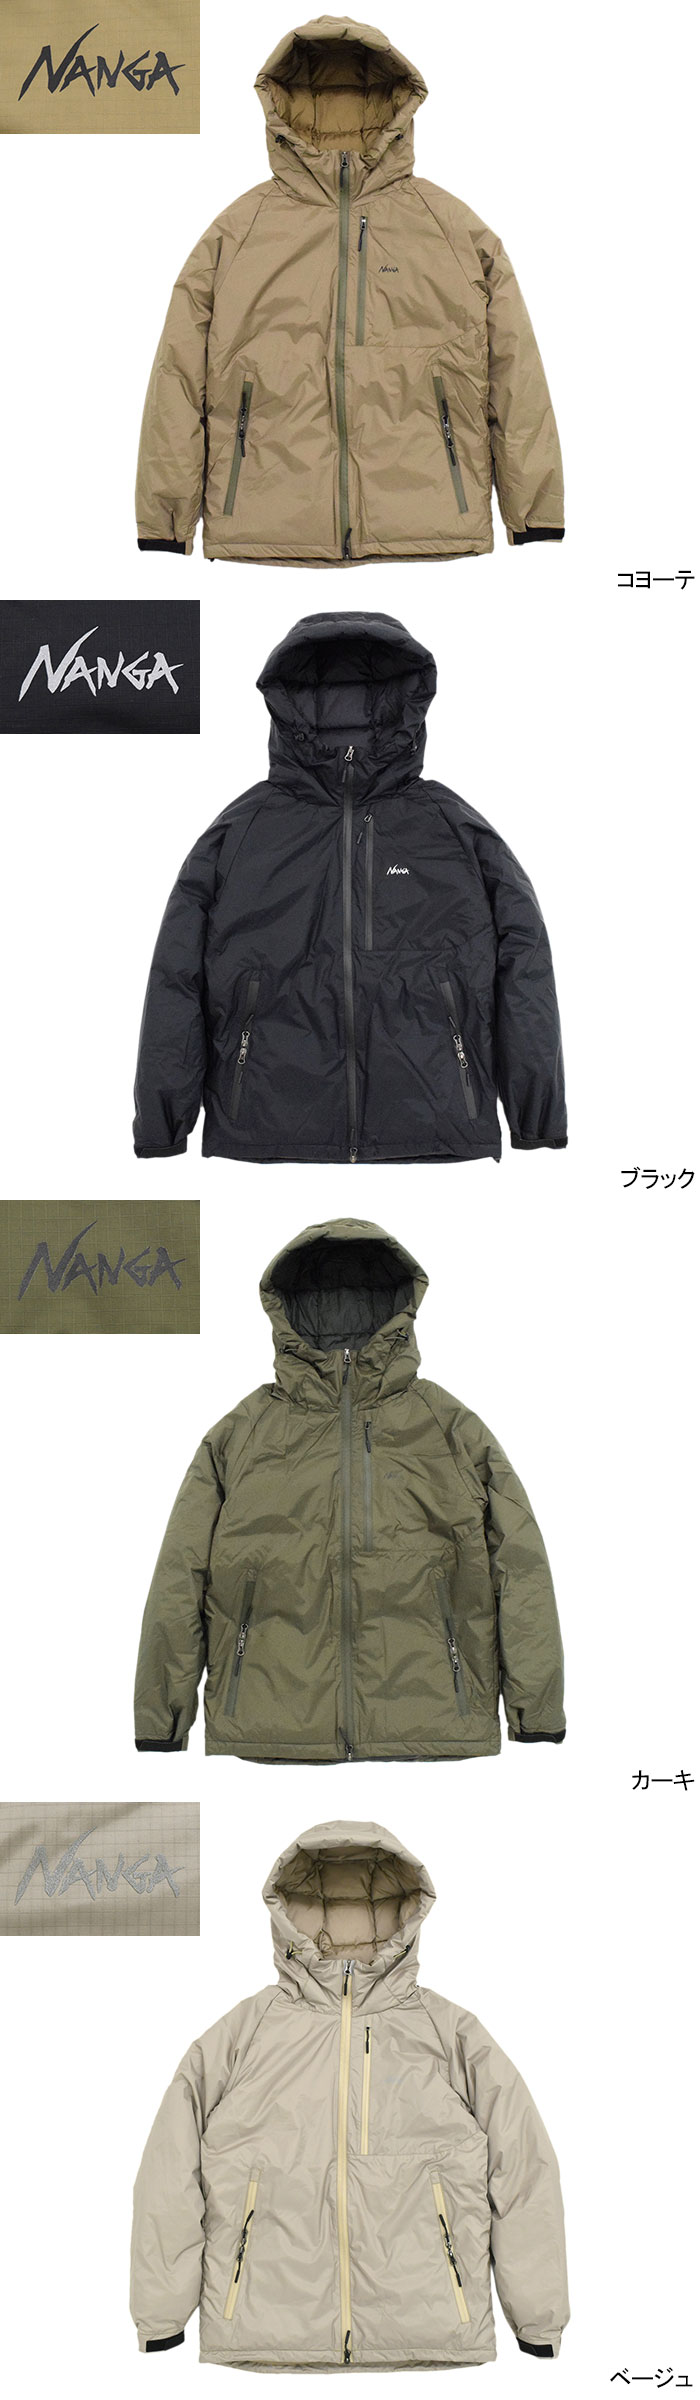 ナンガ ダウンジャケット NANGA メンズ オーロラ  Aurora Down JKT 2022秋冬 MADE IN JAPAN 日本製 JACKET アウター ブルゾン 男性用 - 18